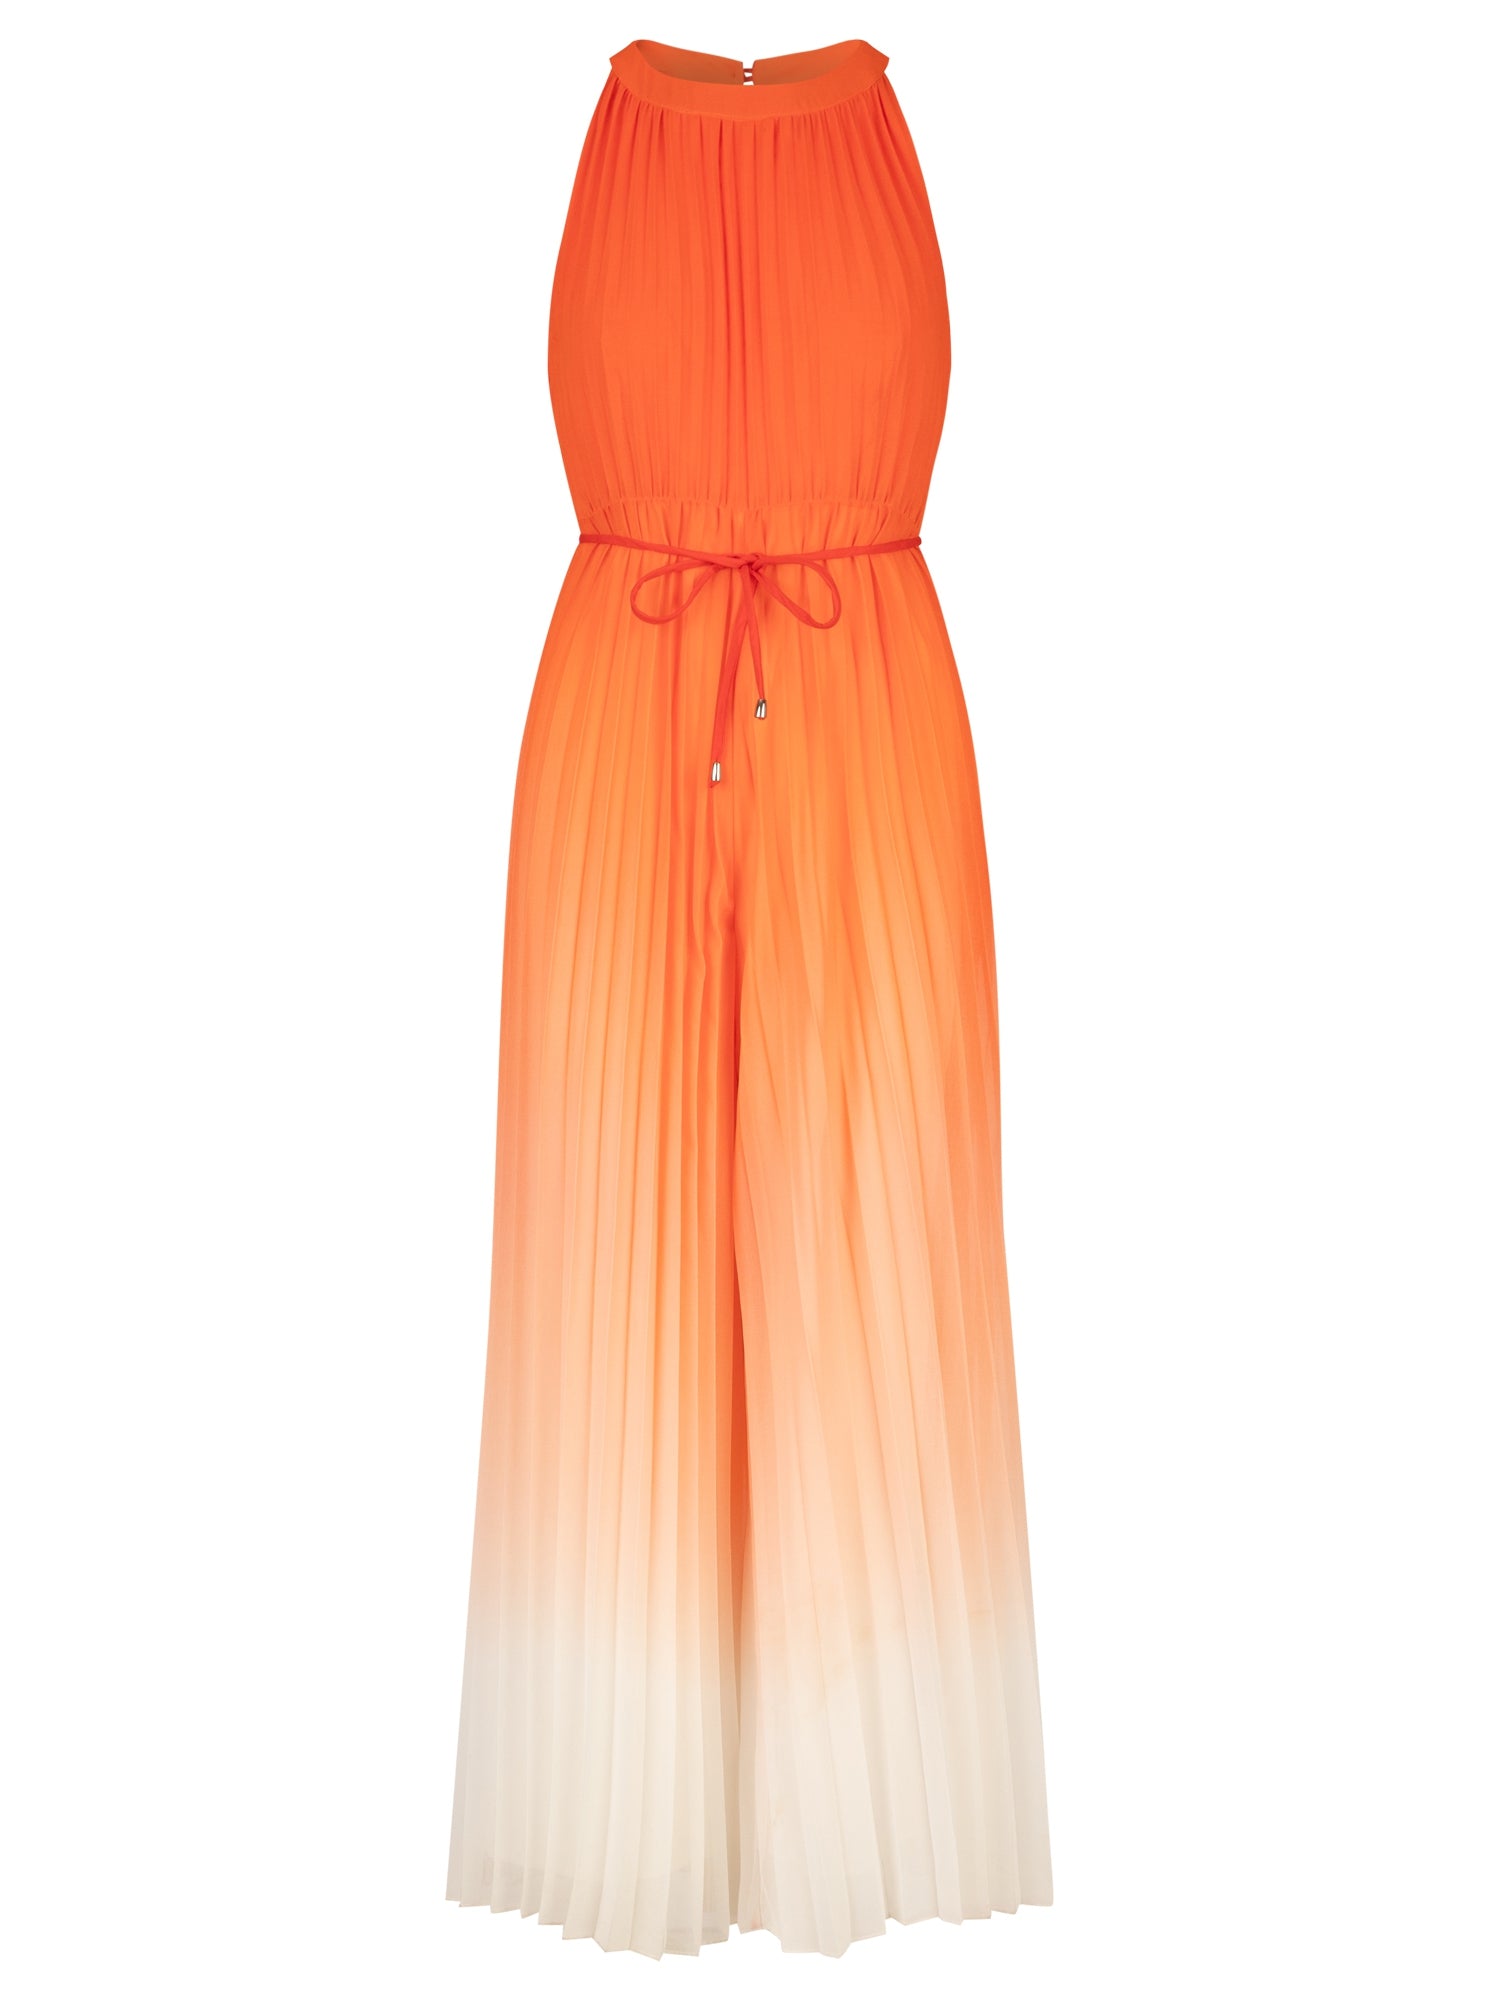 APART Overall mit Farbverlauf aus leicht körnigem, plissierten Chiffon | orange-creme